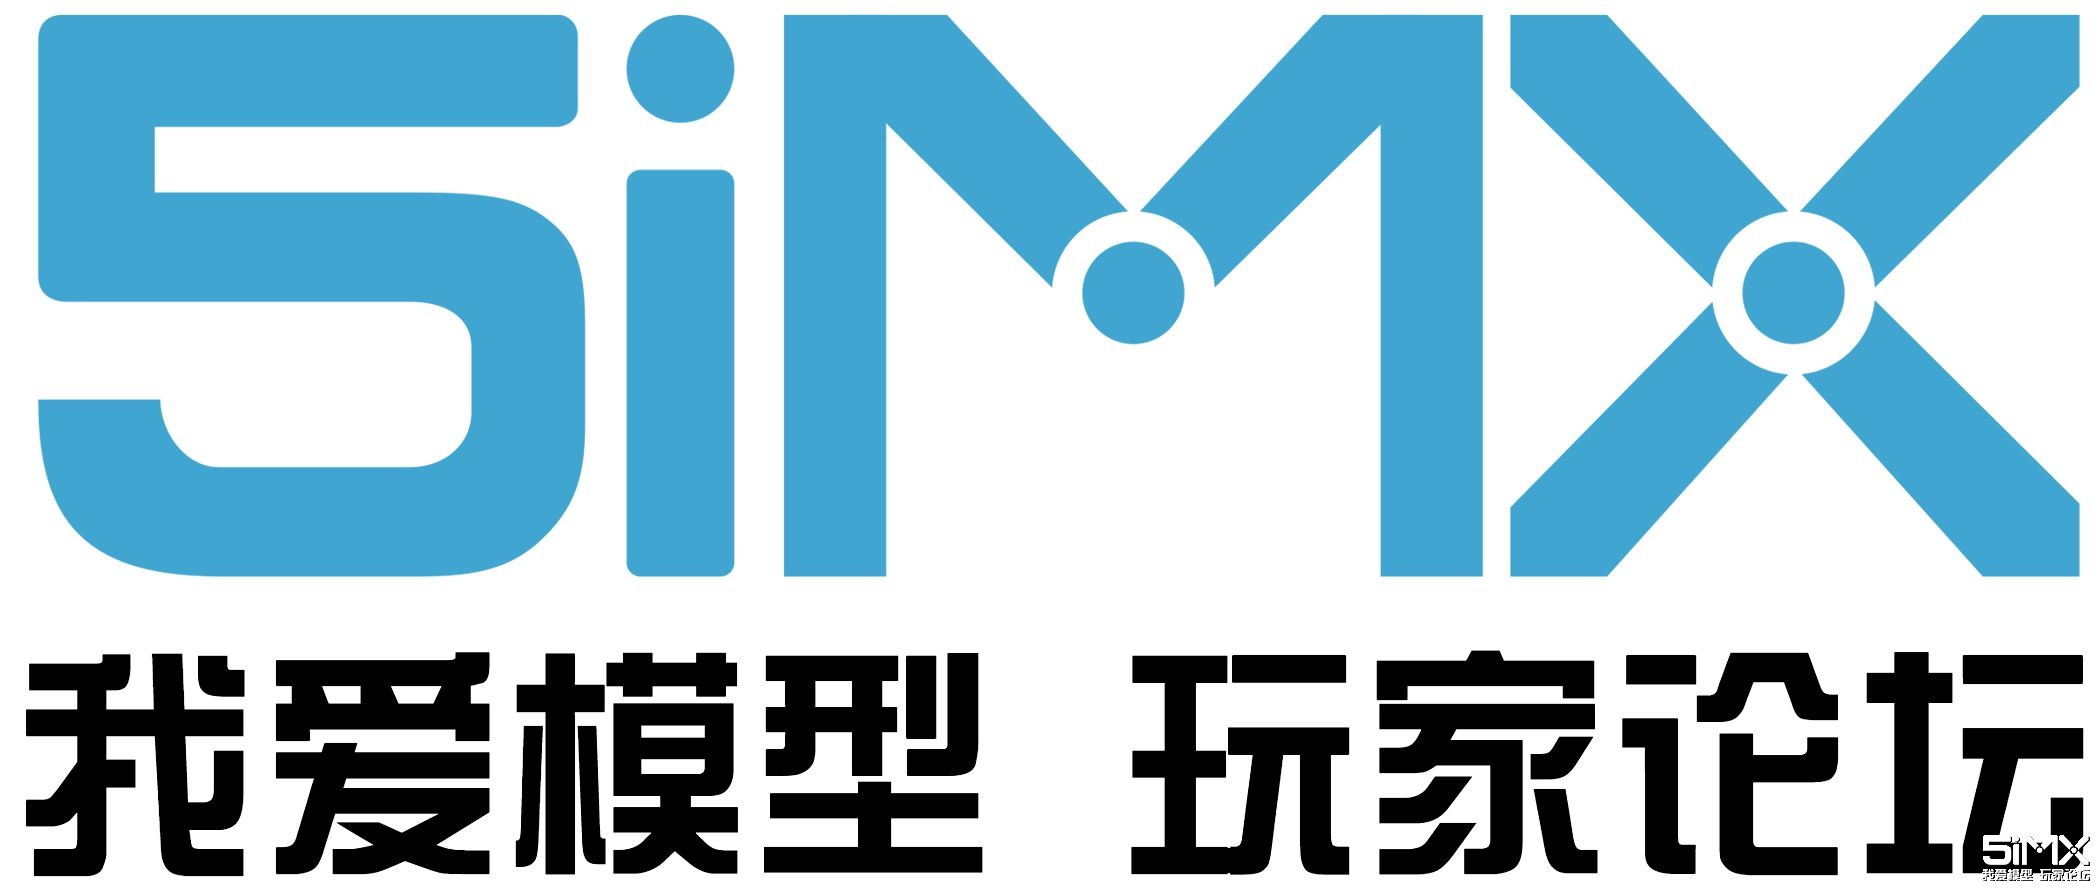 5imx-logo_副本.jpg